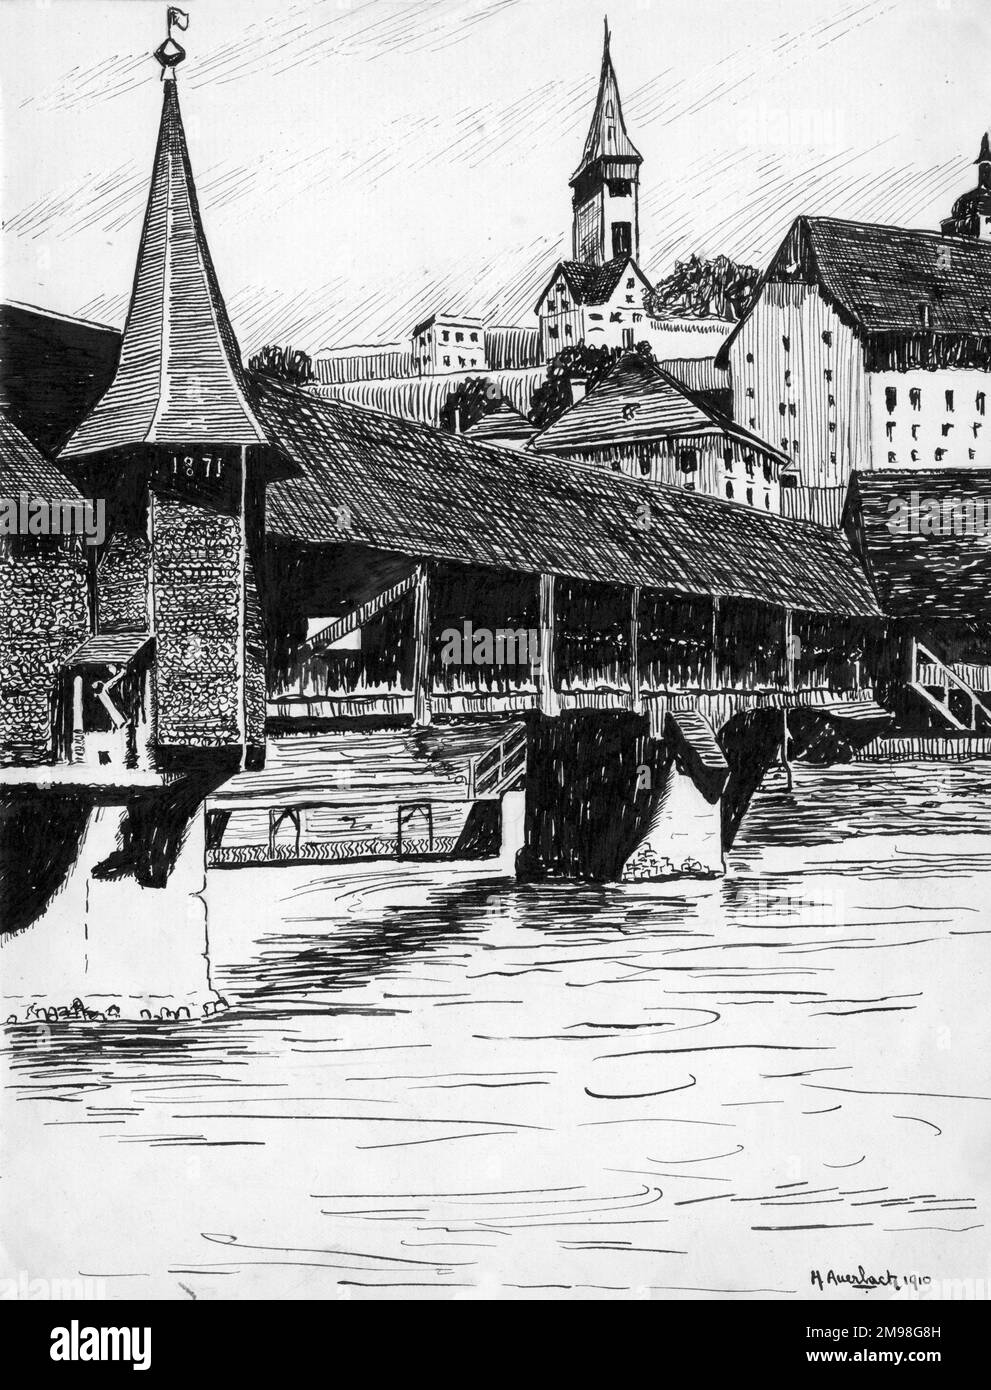 Stift- und Tintenzeichnung von Harold Auerbach, Luzern, Schweiz, April 1910  Stockfotografie - Alamy